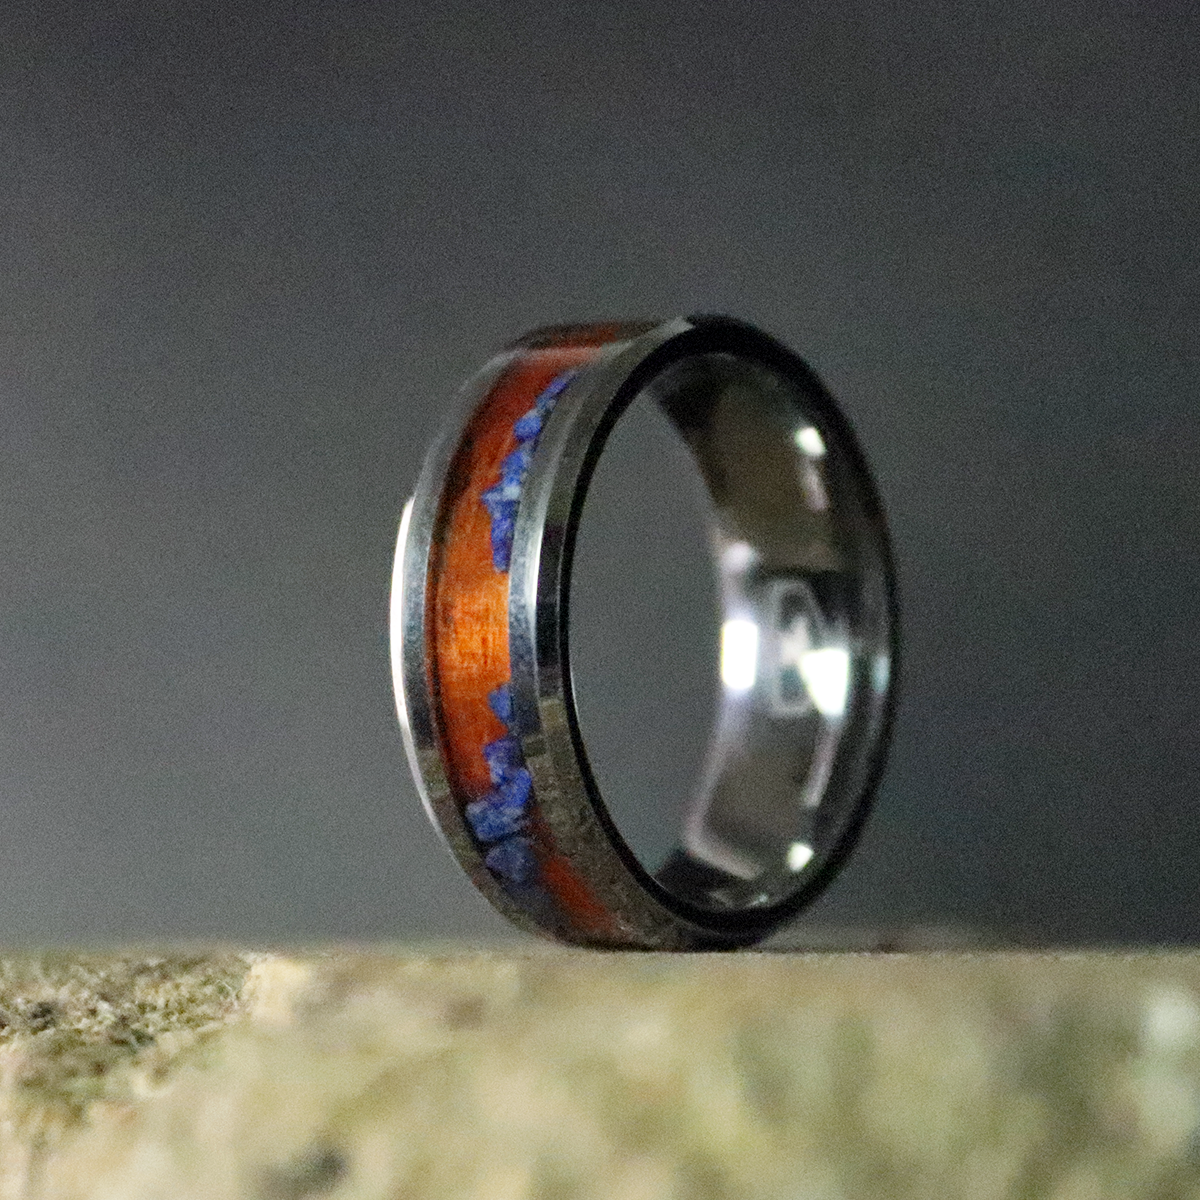 Padauk and Lapis Lazuli Inlay Ring